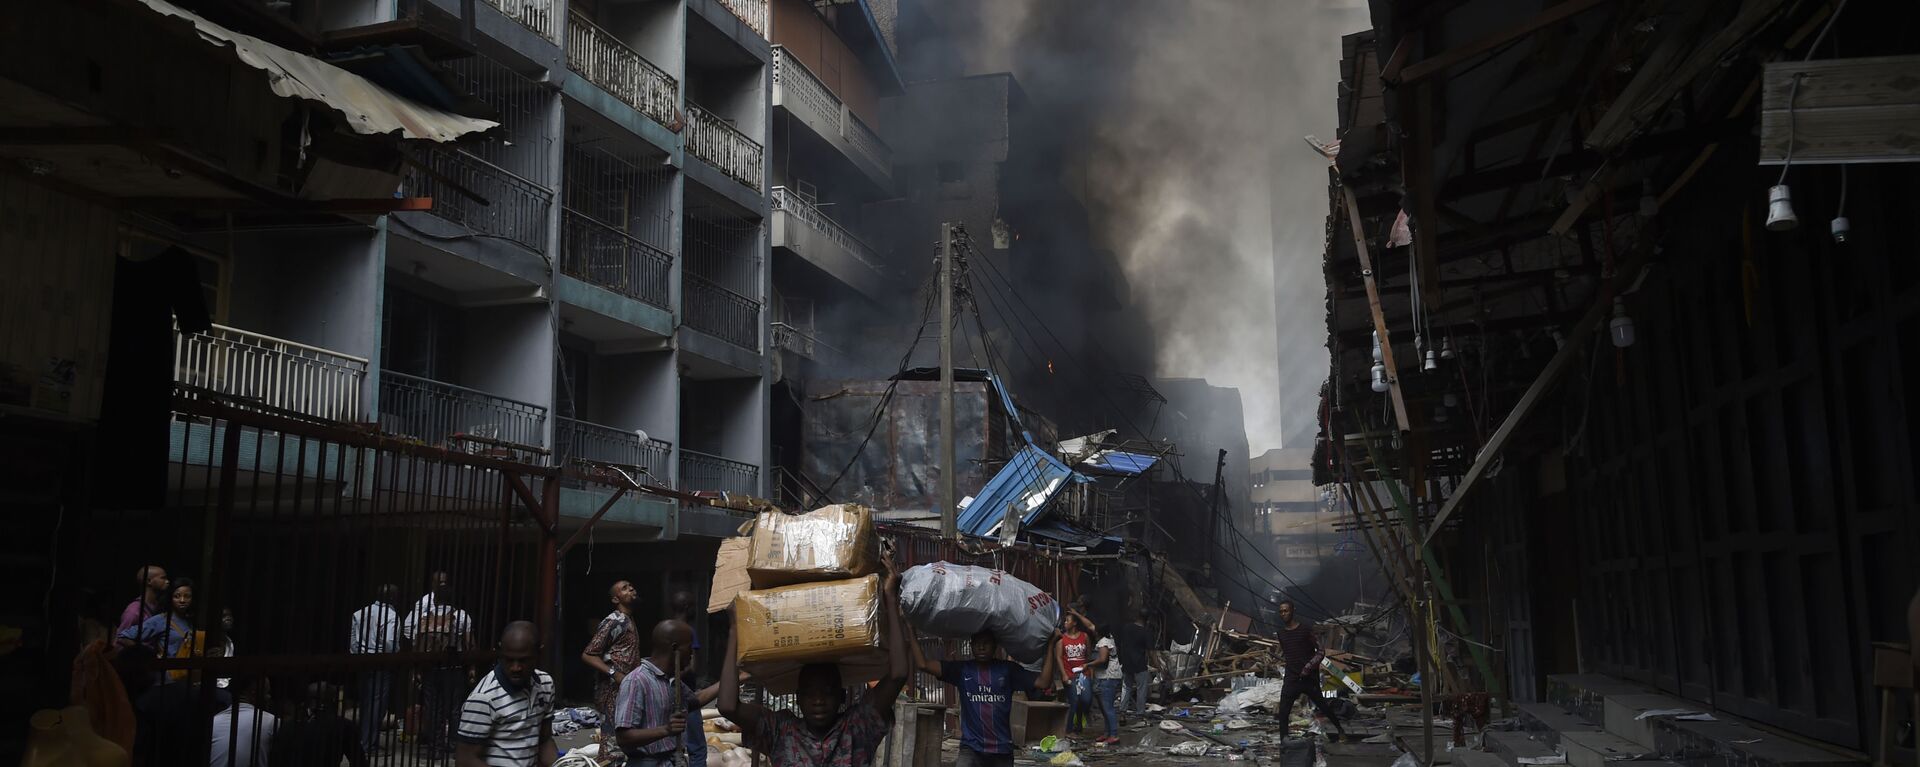 أهالي حي سوق بالوغون في لاغوس يحملون أغراضهم بعد أن تم اطفاء الحريق في المنطقة، نيجيريا 29 يناير 2020 - سبوتنيك عربي, 1920, 23.04.2022